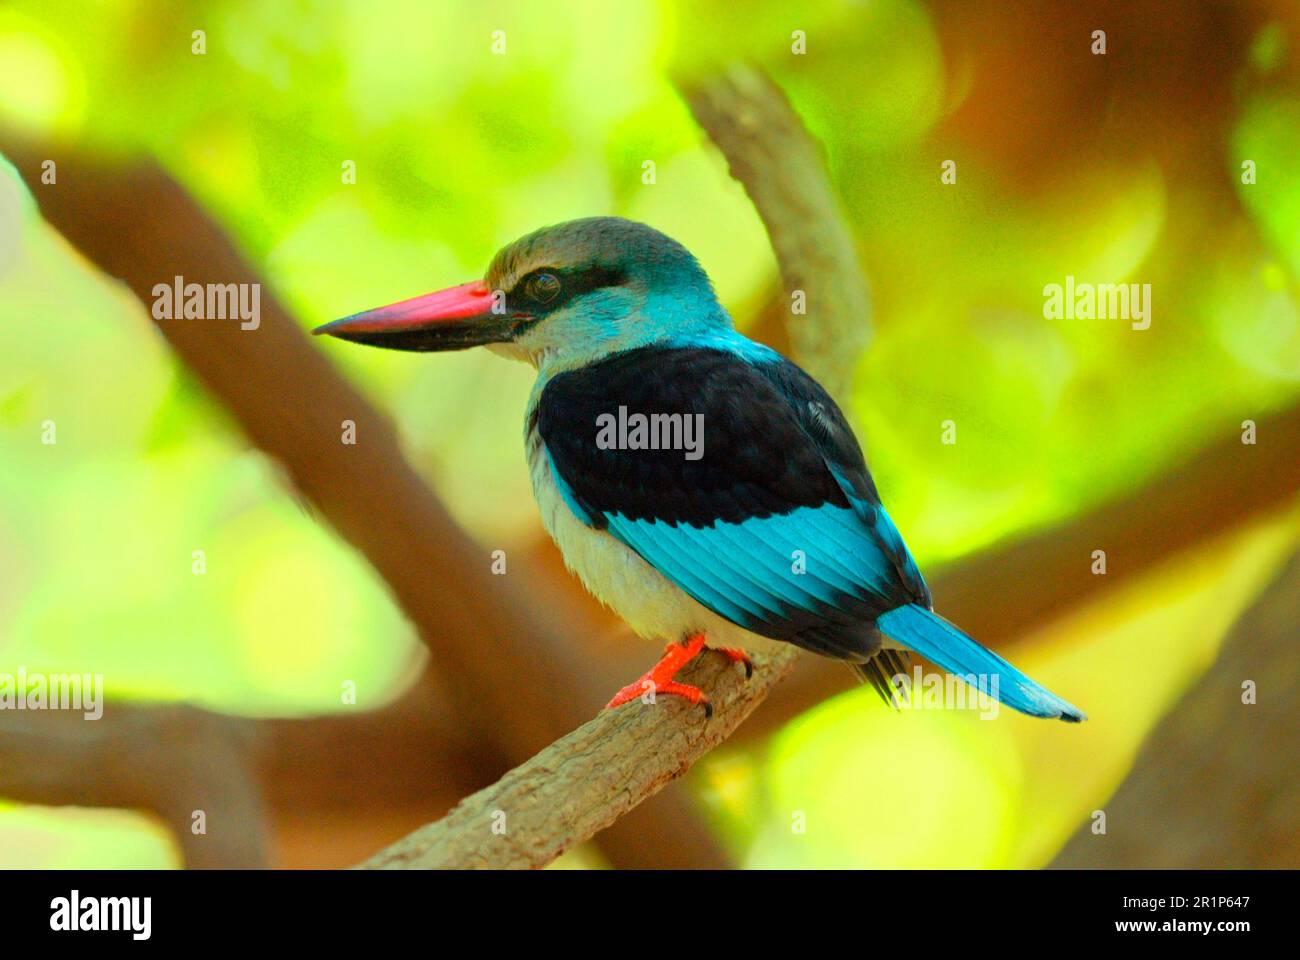 kingfisher croisé (Halcyon malimbica), Kingfisher, Kingfisher, animaux, oiseaux, Kingfisher croisé adulte, perchée sur la branche, sur la côte Banque D'Images